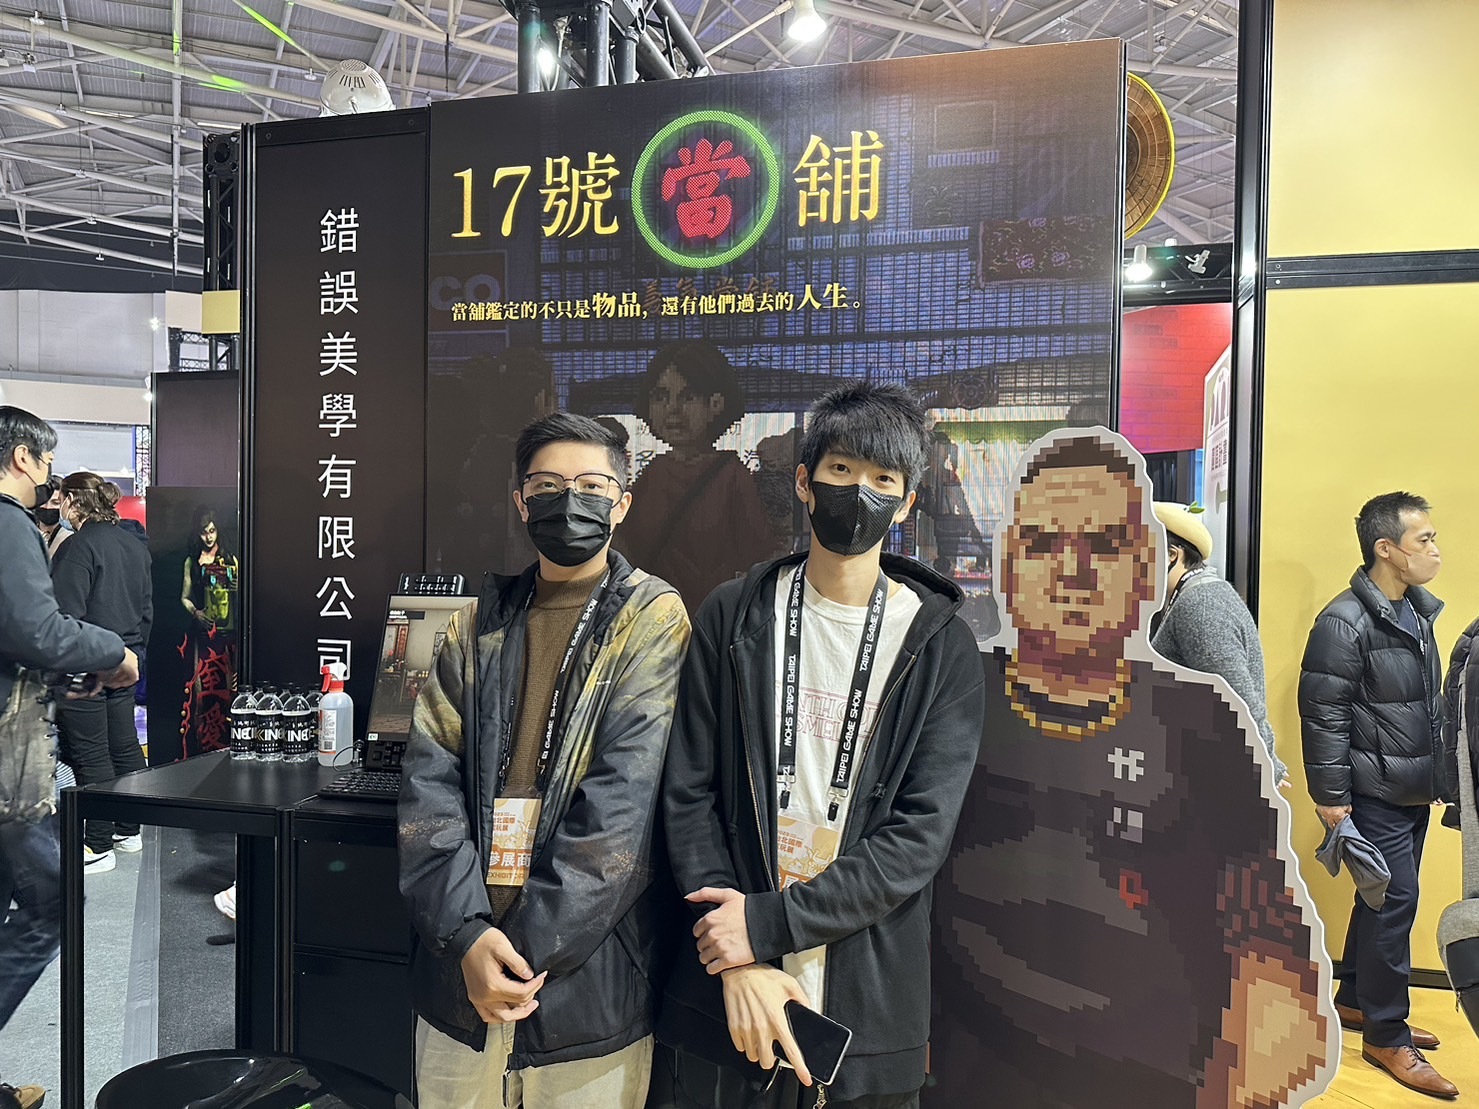 台湾团队新作《17 号当铺》开放现场试玩 预告今年推出下一阶段体验版本插图